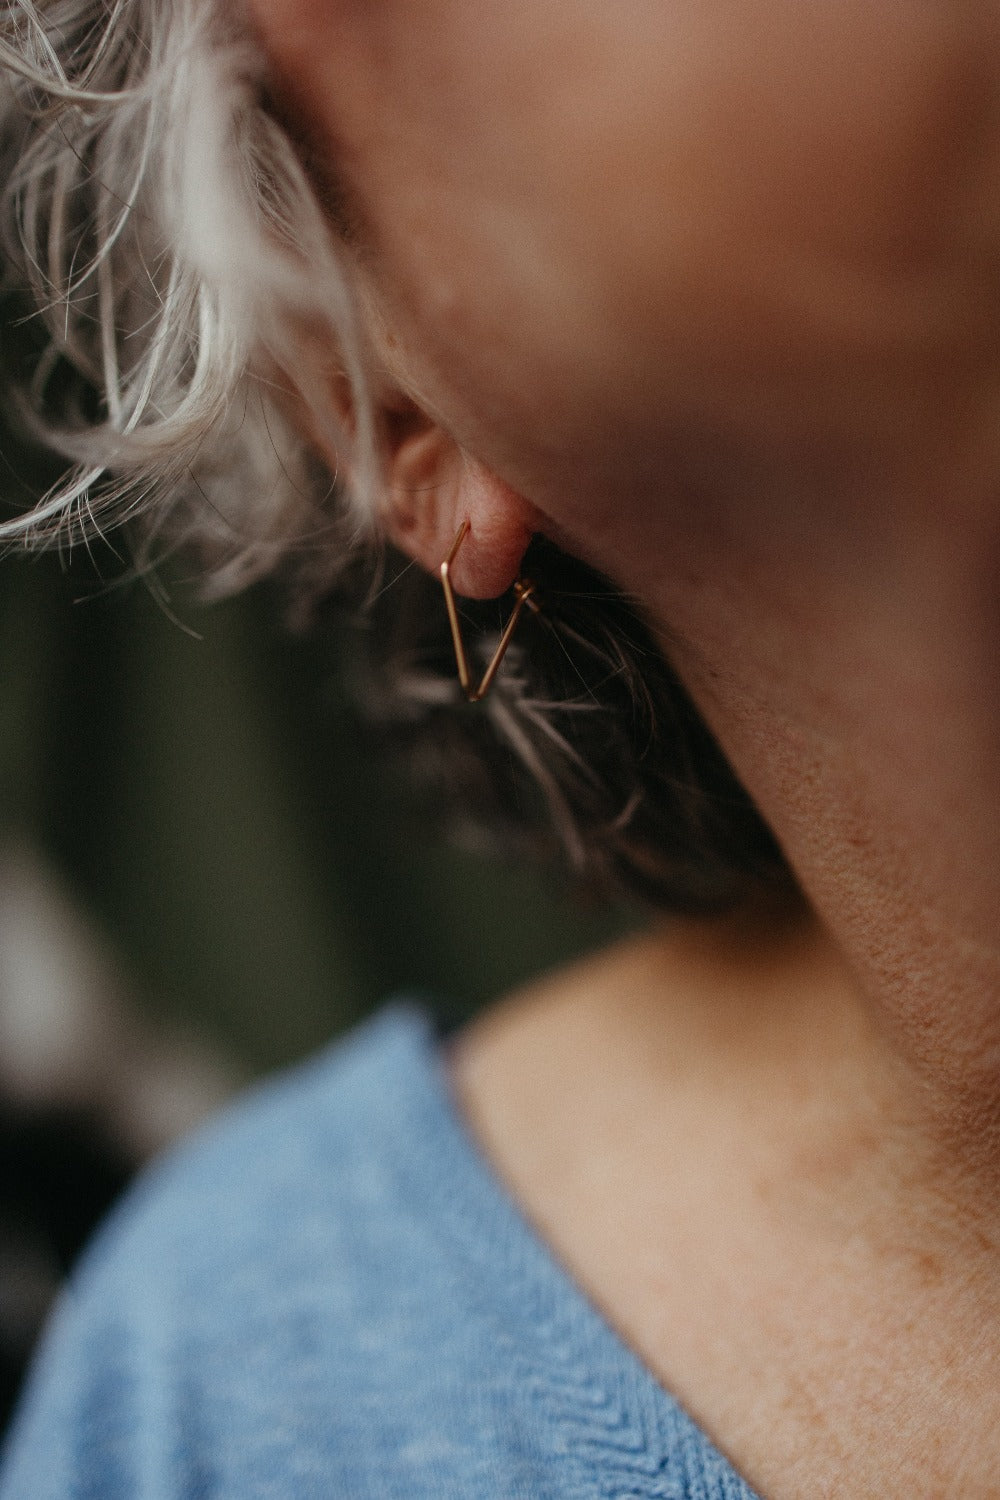 dainty dagger point wire earrings styled by a model